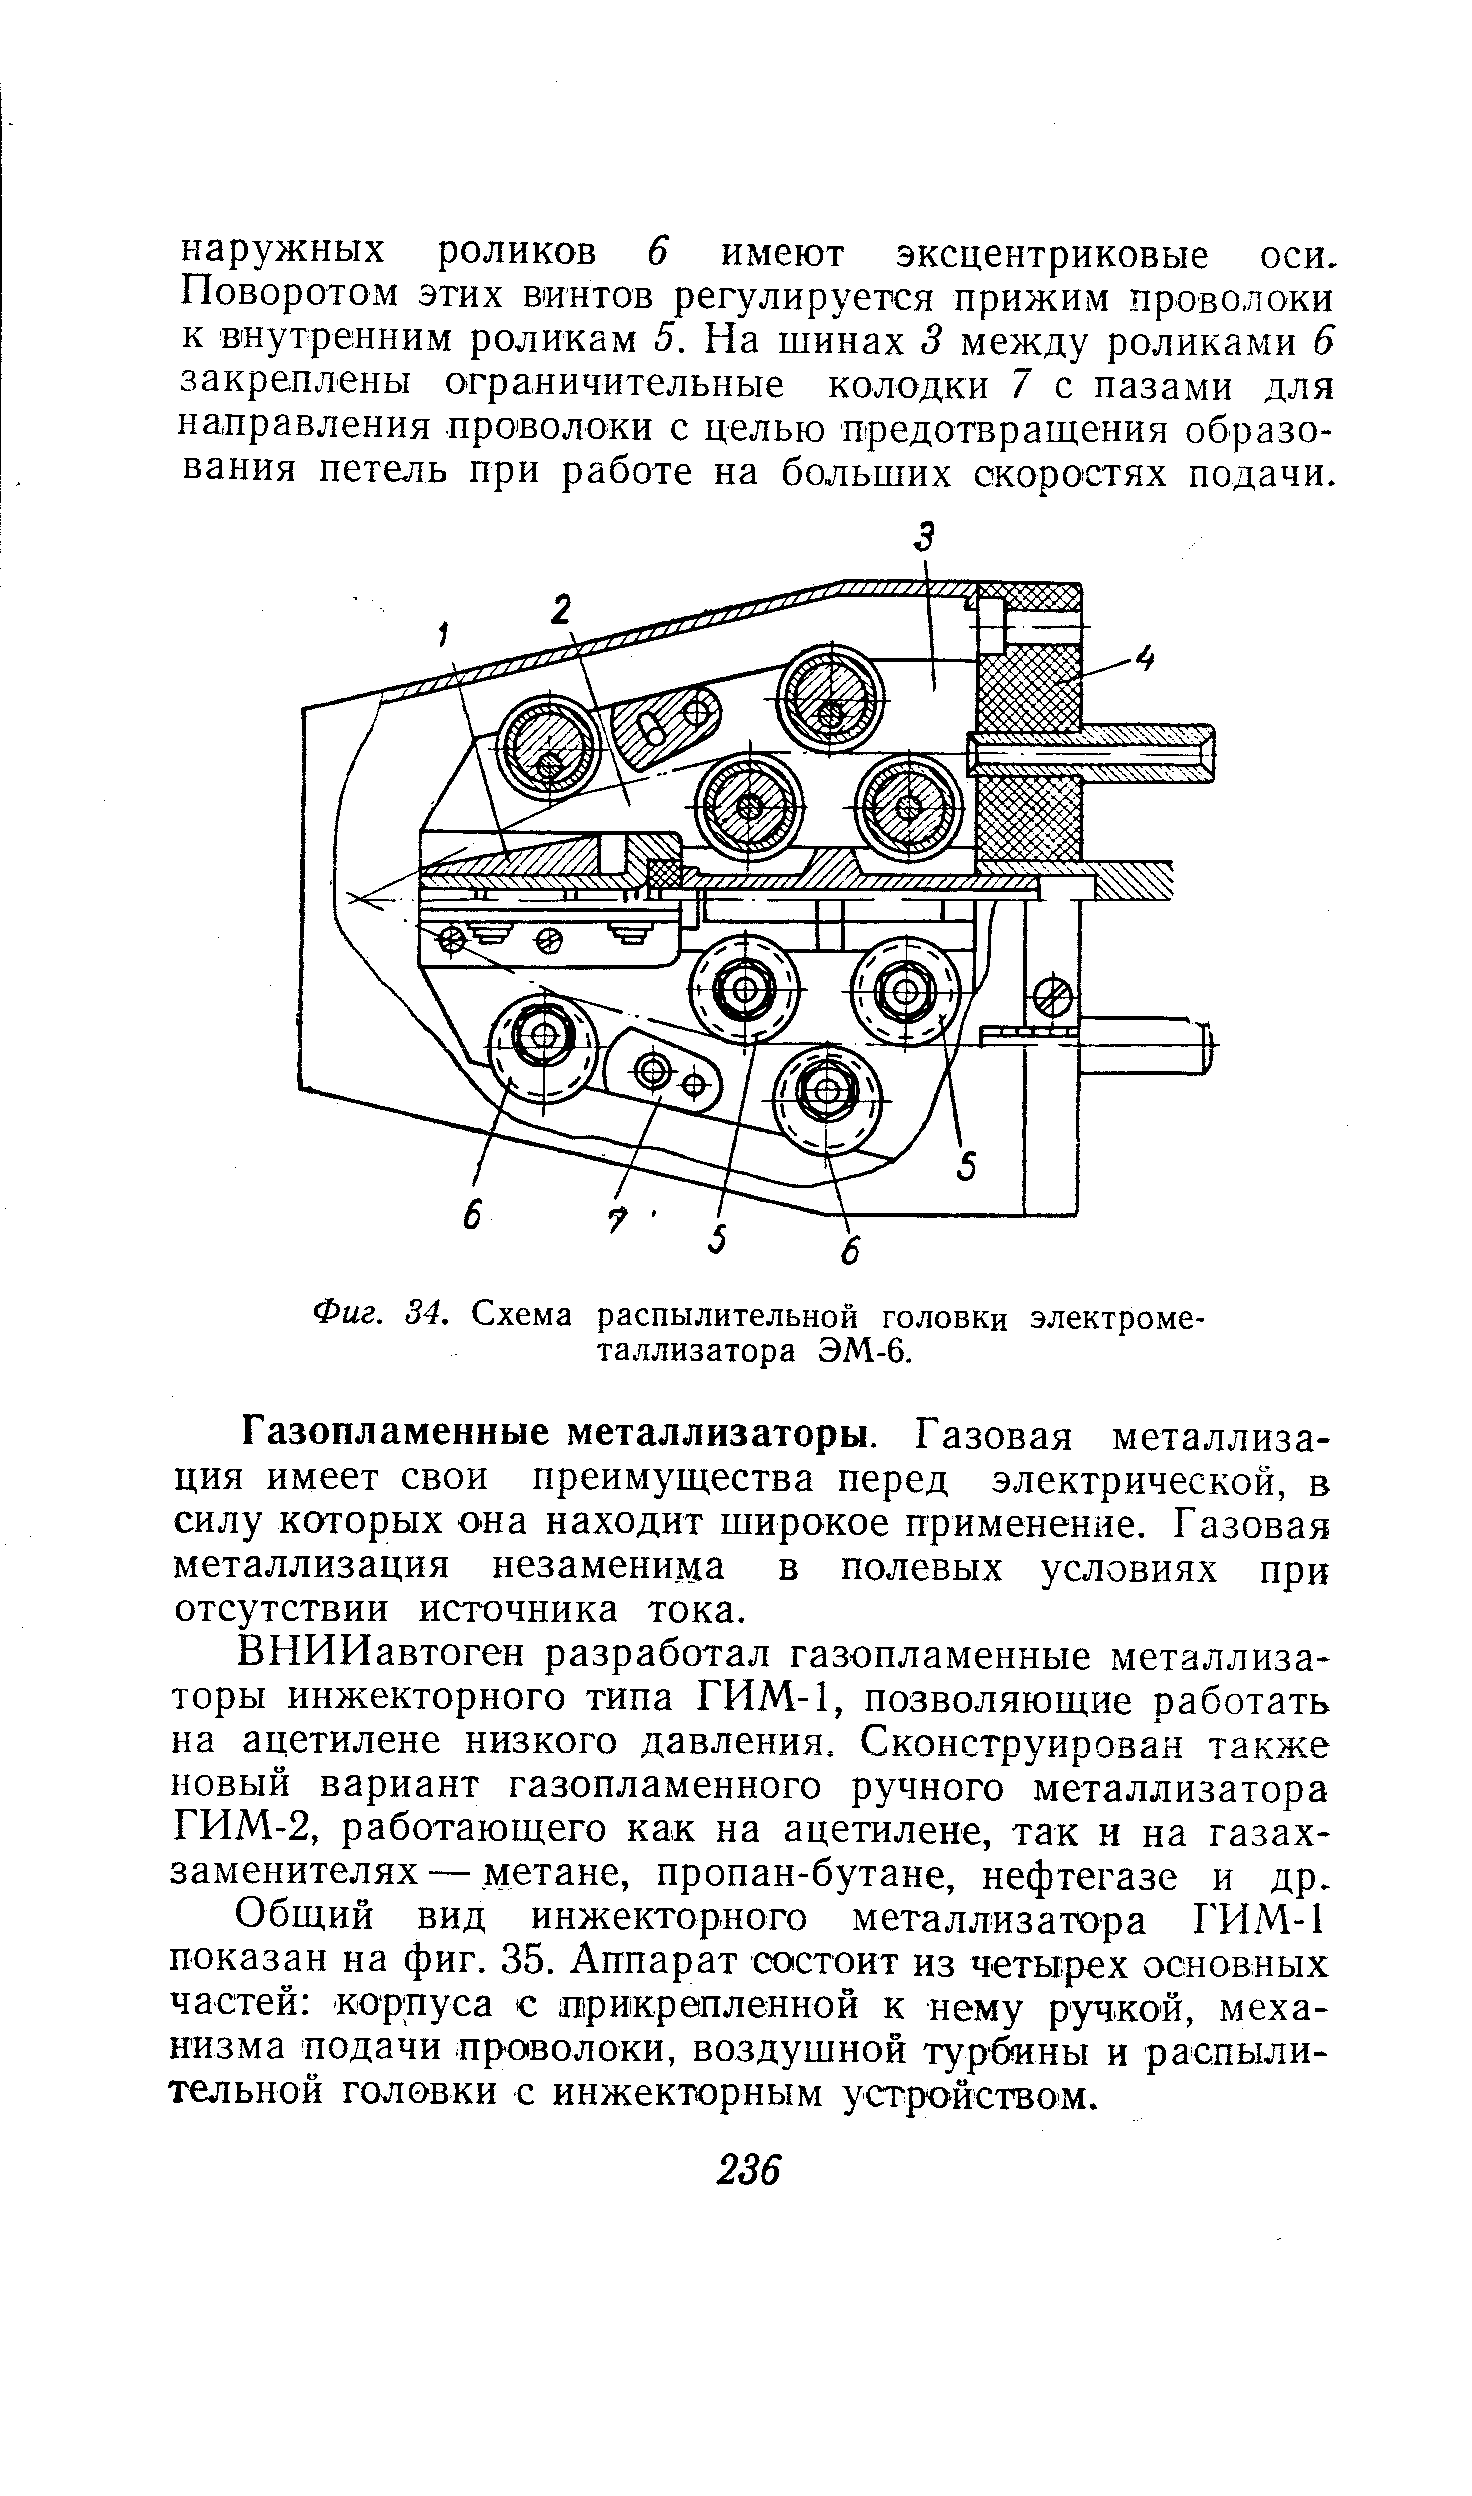 Фиг. 34. Схема распылительной головки электрометаллизатора ЭМ-6.
